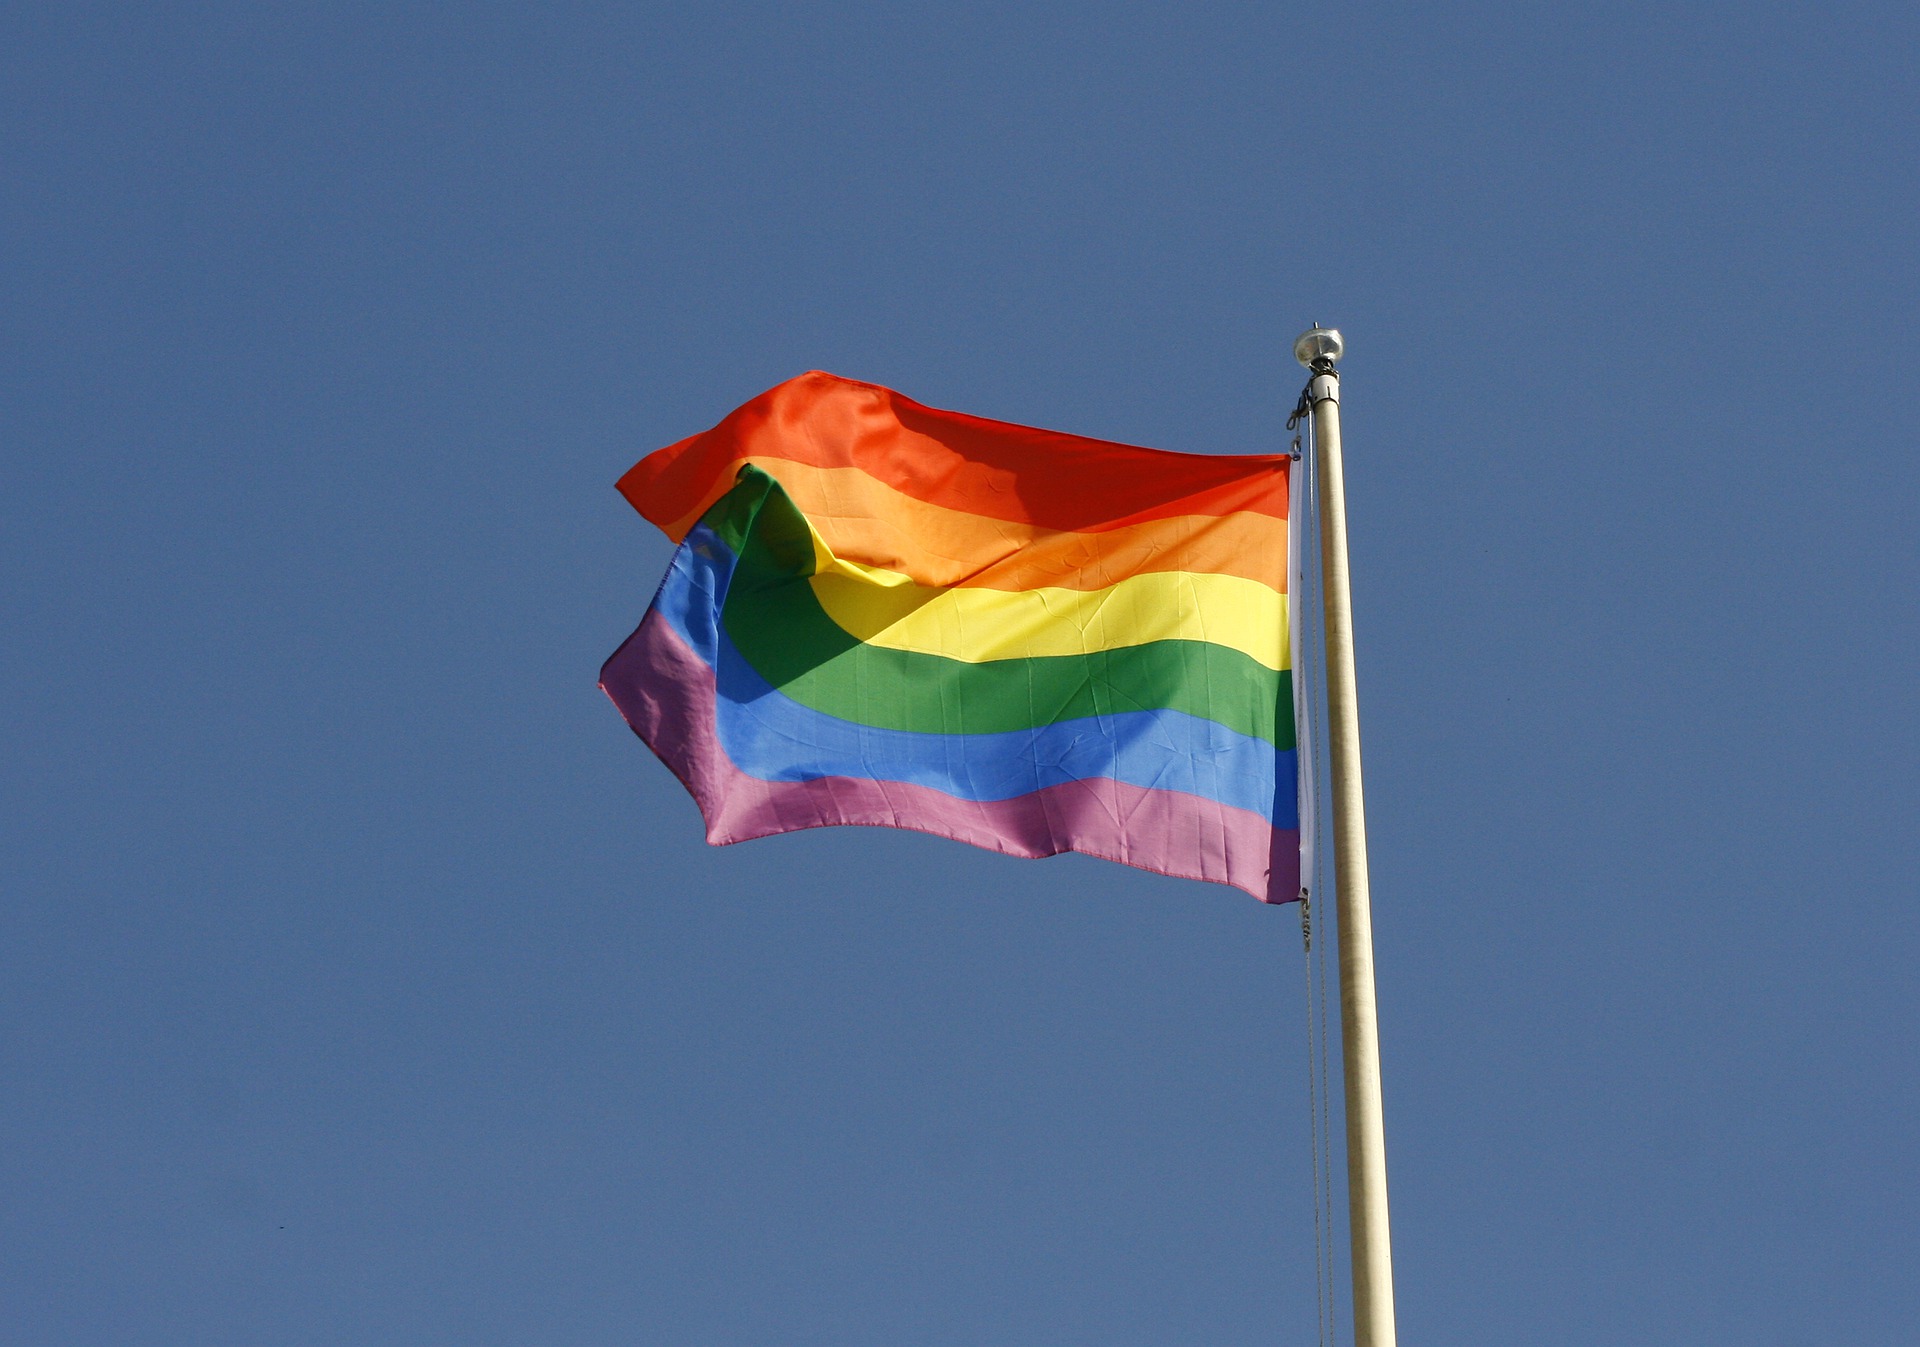 CÂMARA APROVA LEI DE TELMA QUE PUNE ESTABELECIMENTO POR LGBTFOBIA